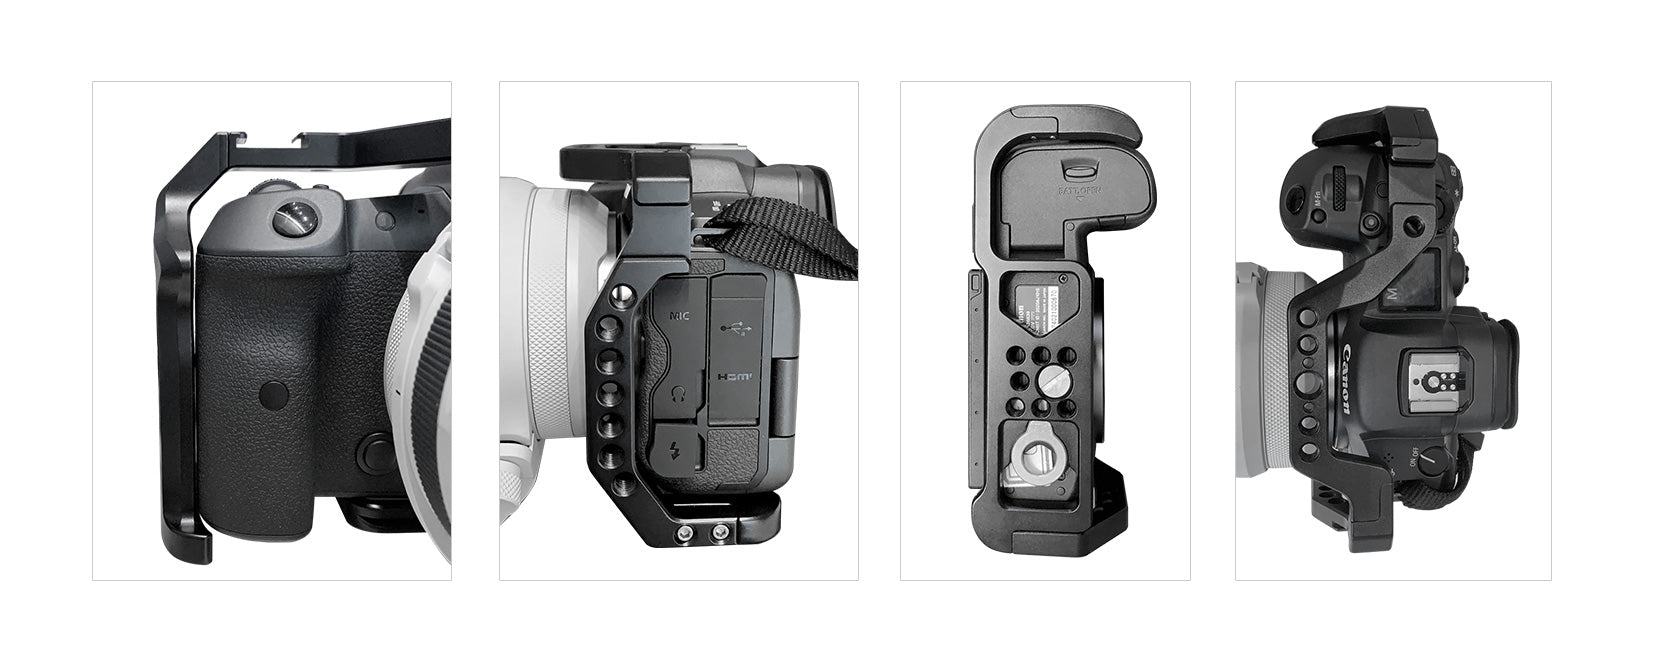 Leofoto EOS-R5 Custom Cage for Canon EOS-R5 Camera